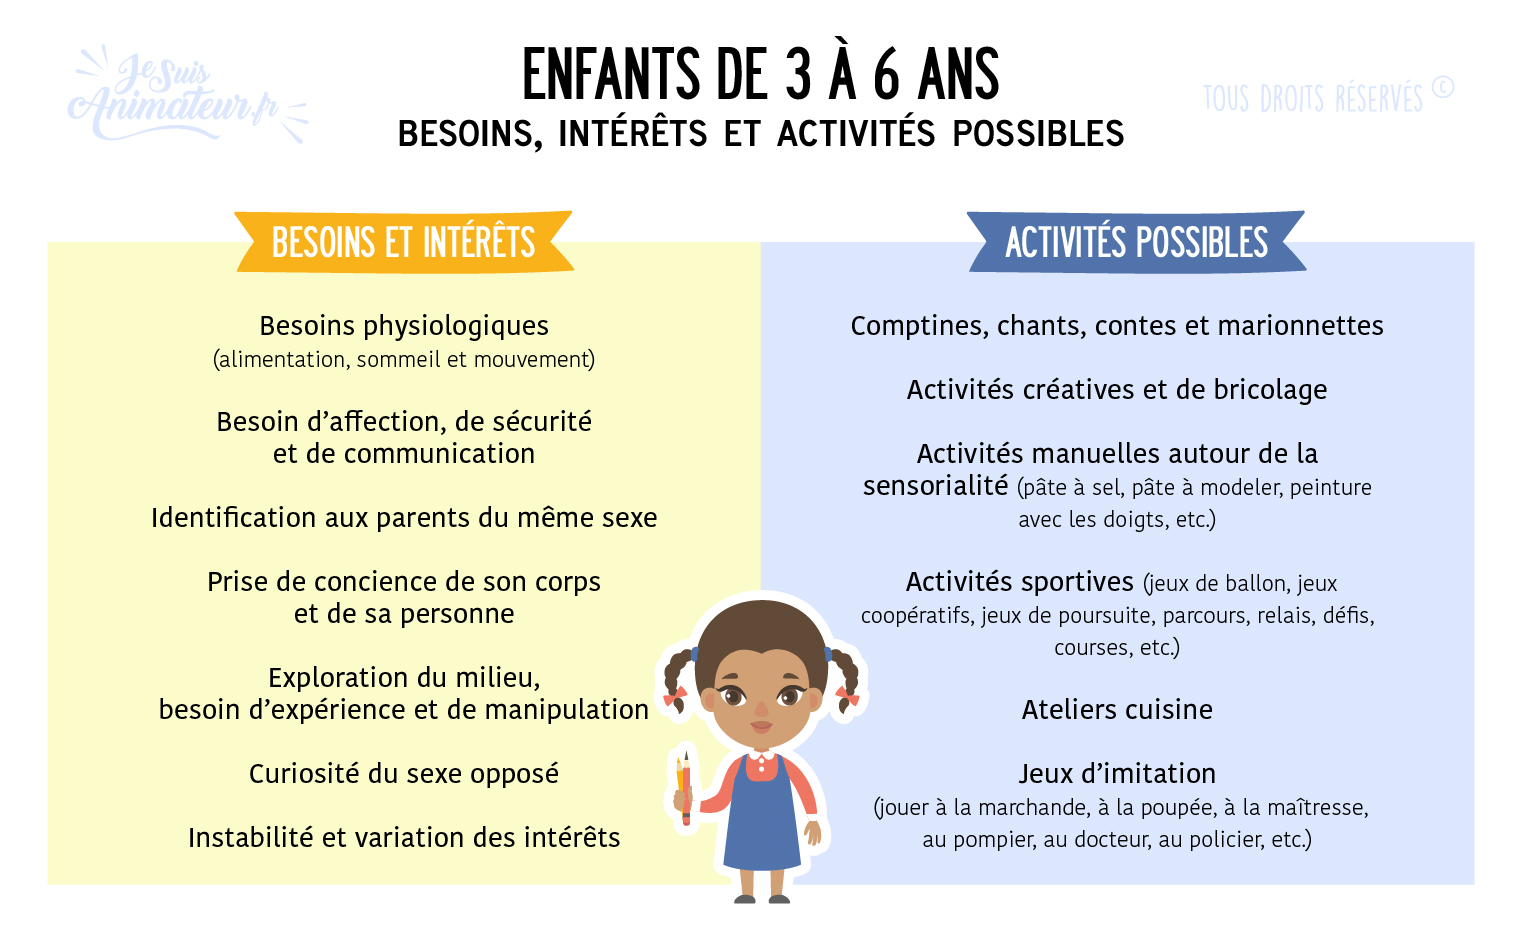 Besoins, intérêts et activités possibles pour les enfants de 3 à 6 ans